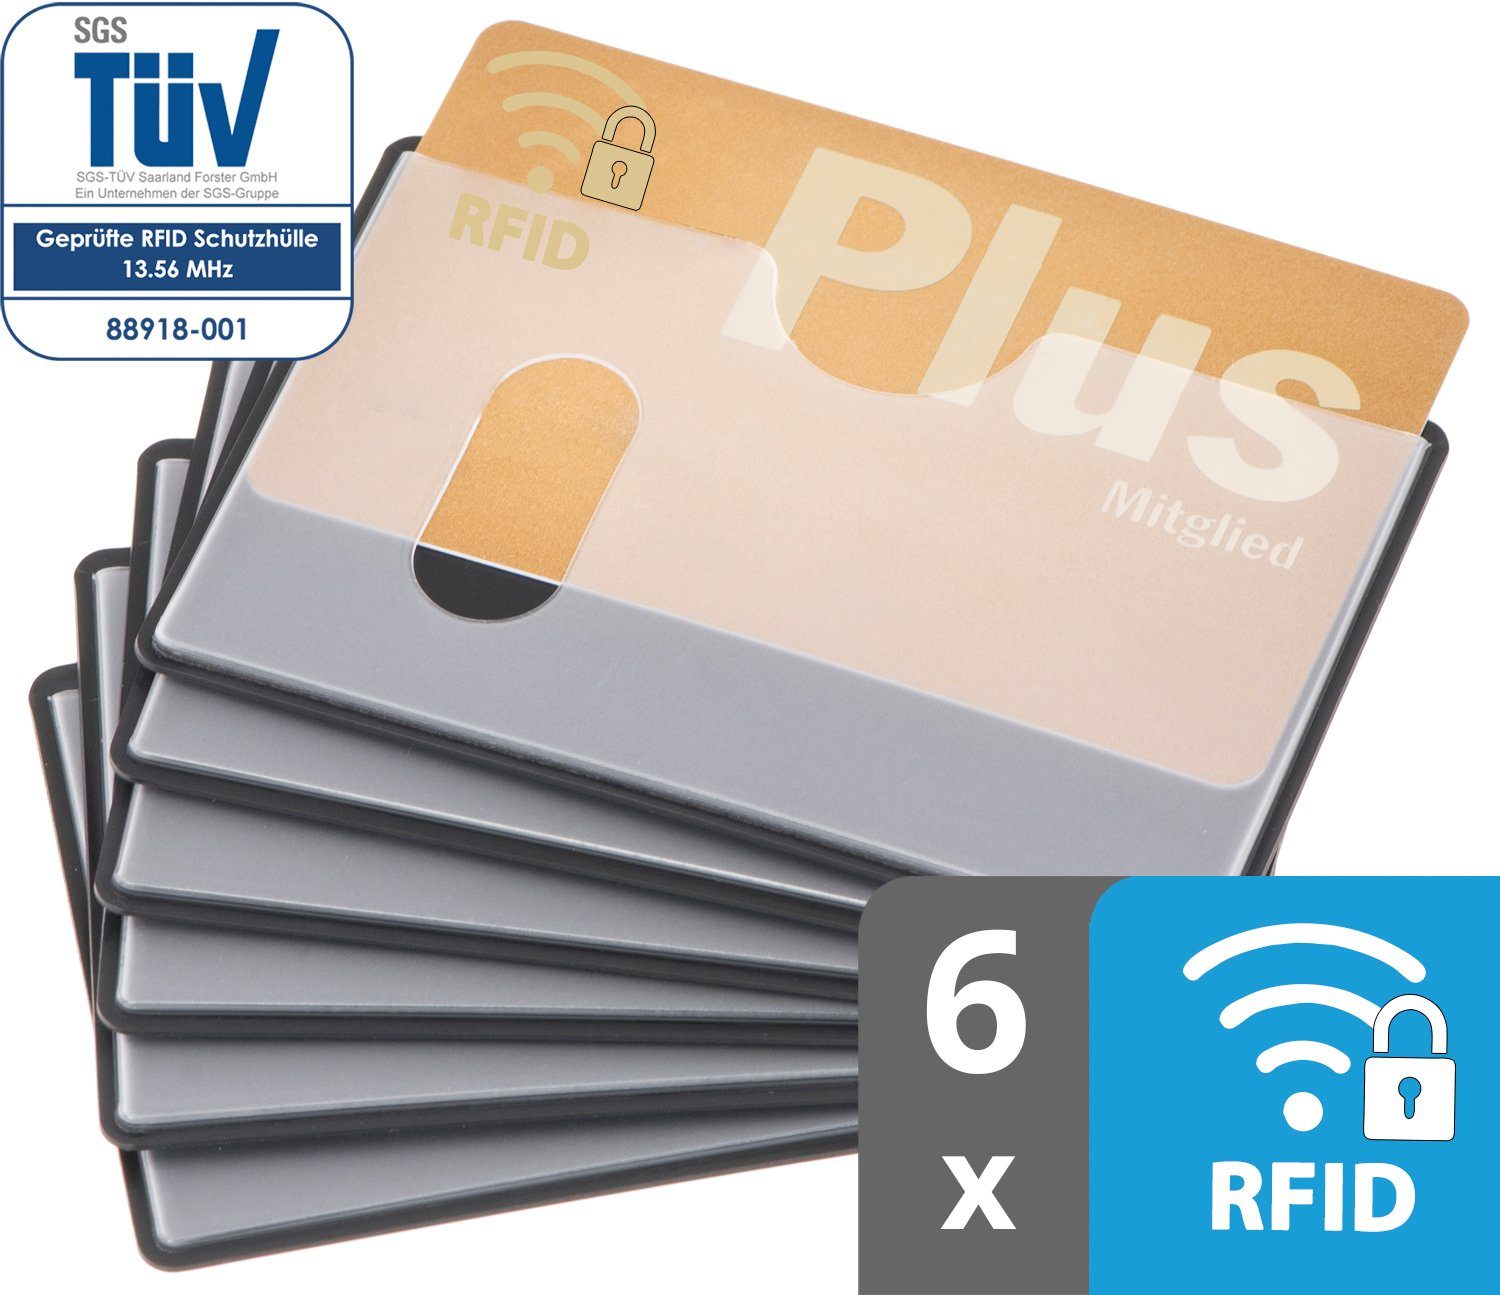 x Scheckkarte - Stück Einschub 91 Schutz, RFID-Block Kreditkartenhüllen mm, valonic valonic NFZ Kreditkarte, transparent, 6 abgeschirmt, RFID Etui oben 59